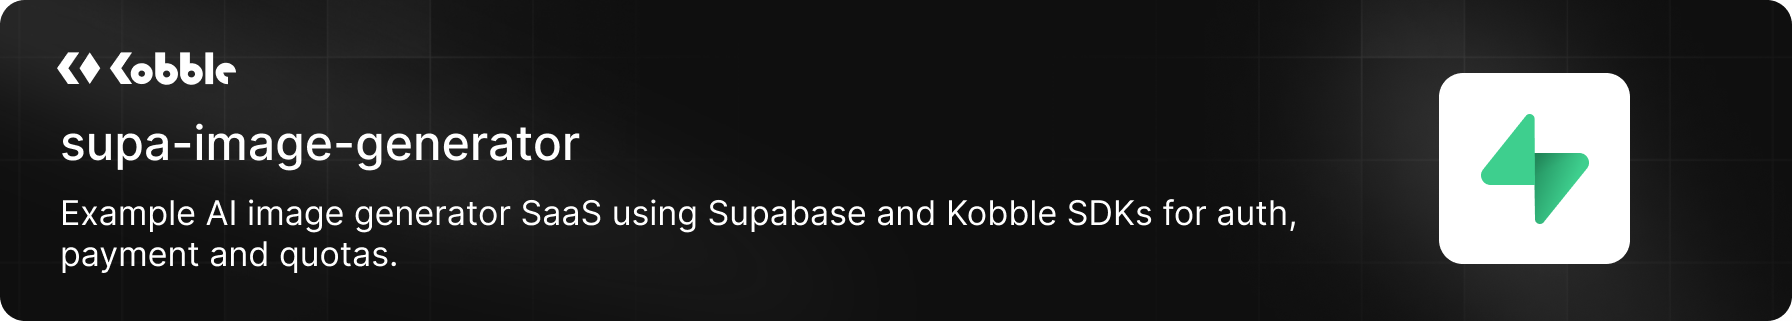 Supabase image generator with Kobble